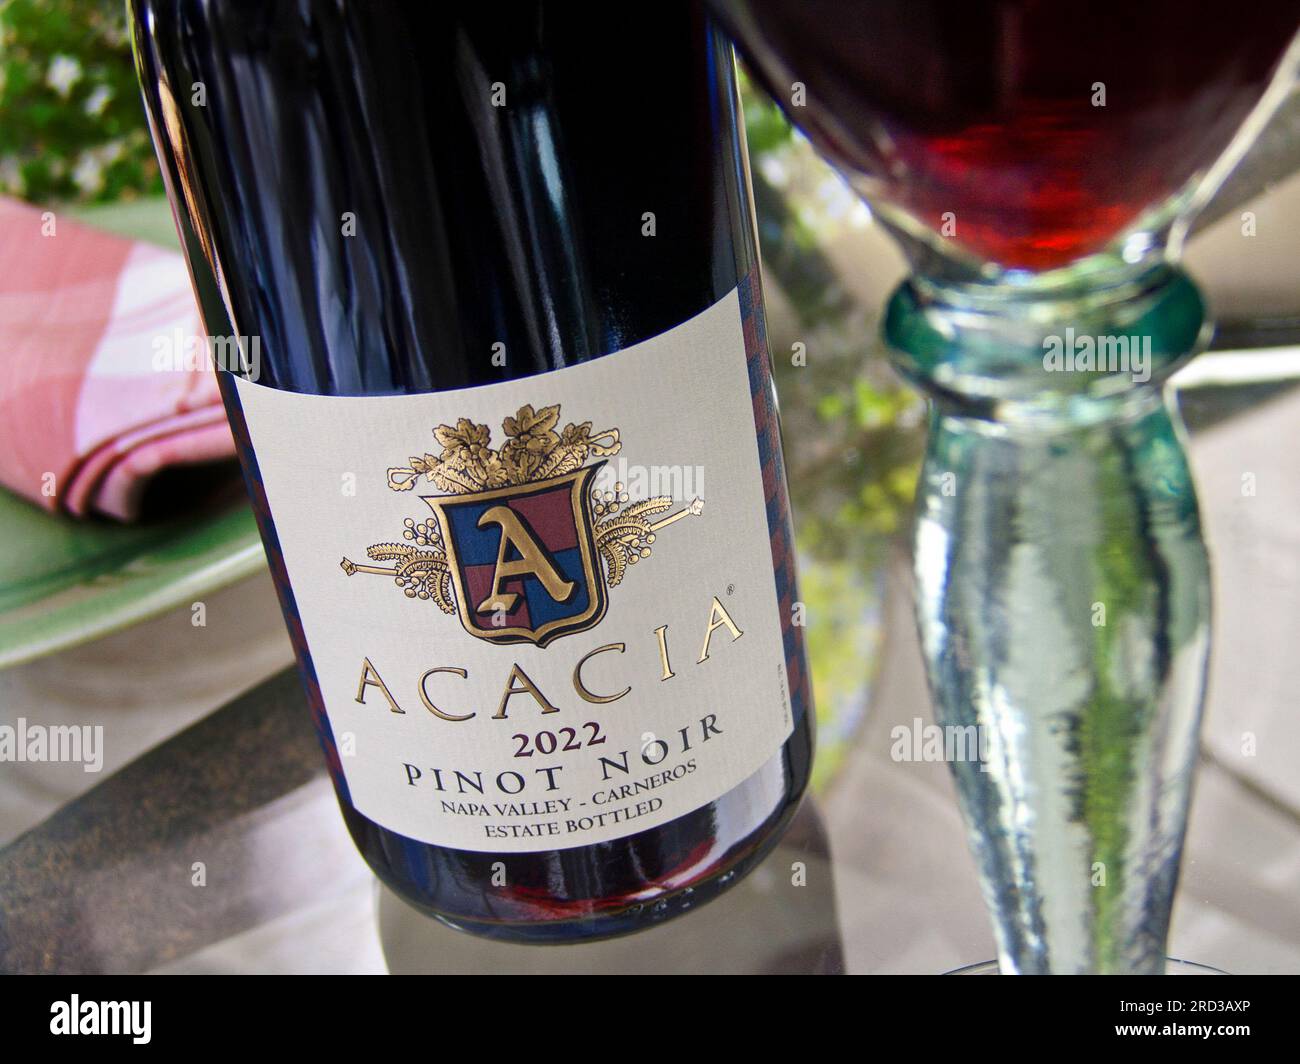 CALIFORNIE NAPA VALLEY Acacia 2022 Pinot Noir bouteille et verre de vin rouge Carneros sur table en verre floral en plein air dans Napa Valley Californie États-Unis Banque D'Images